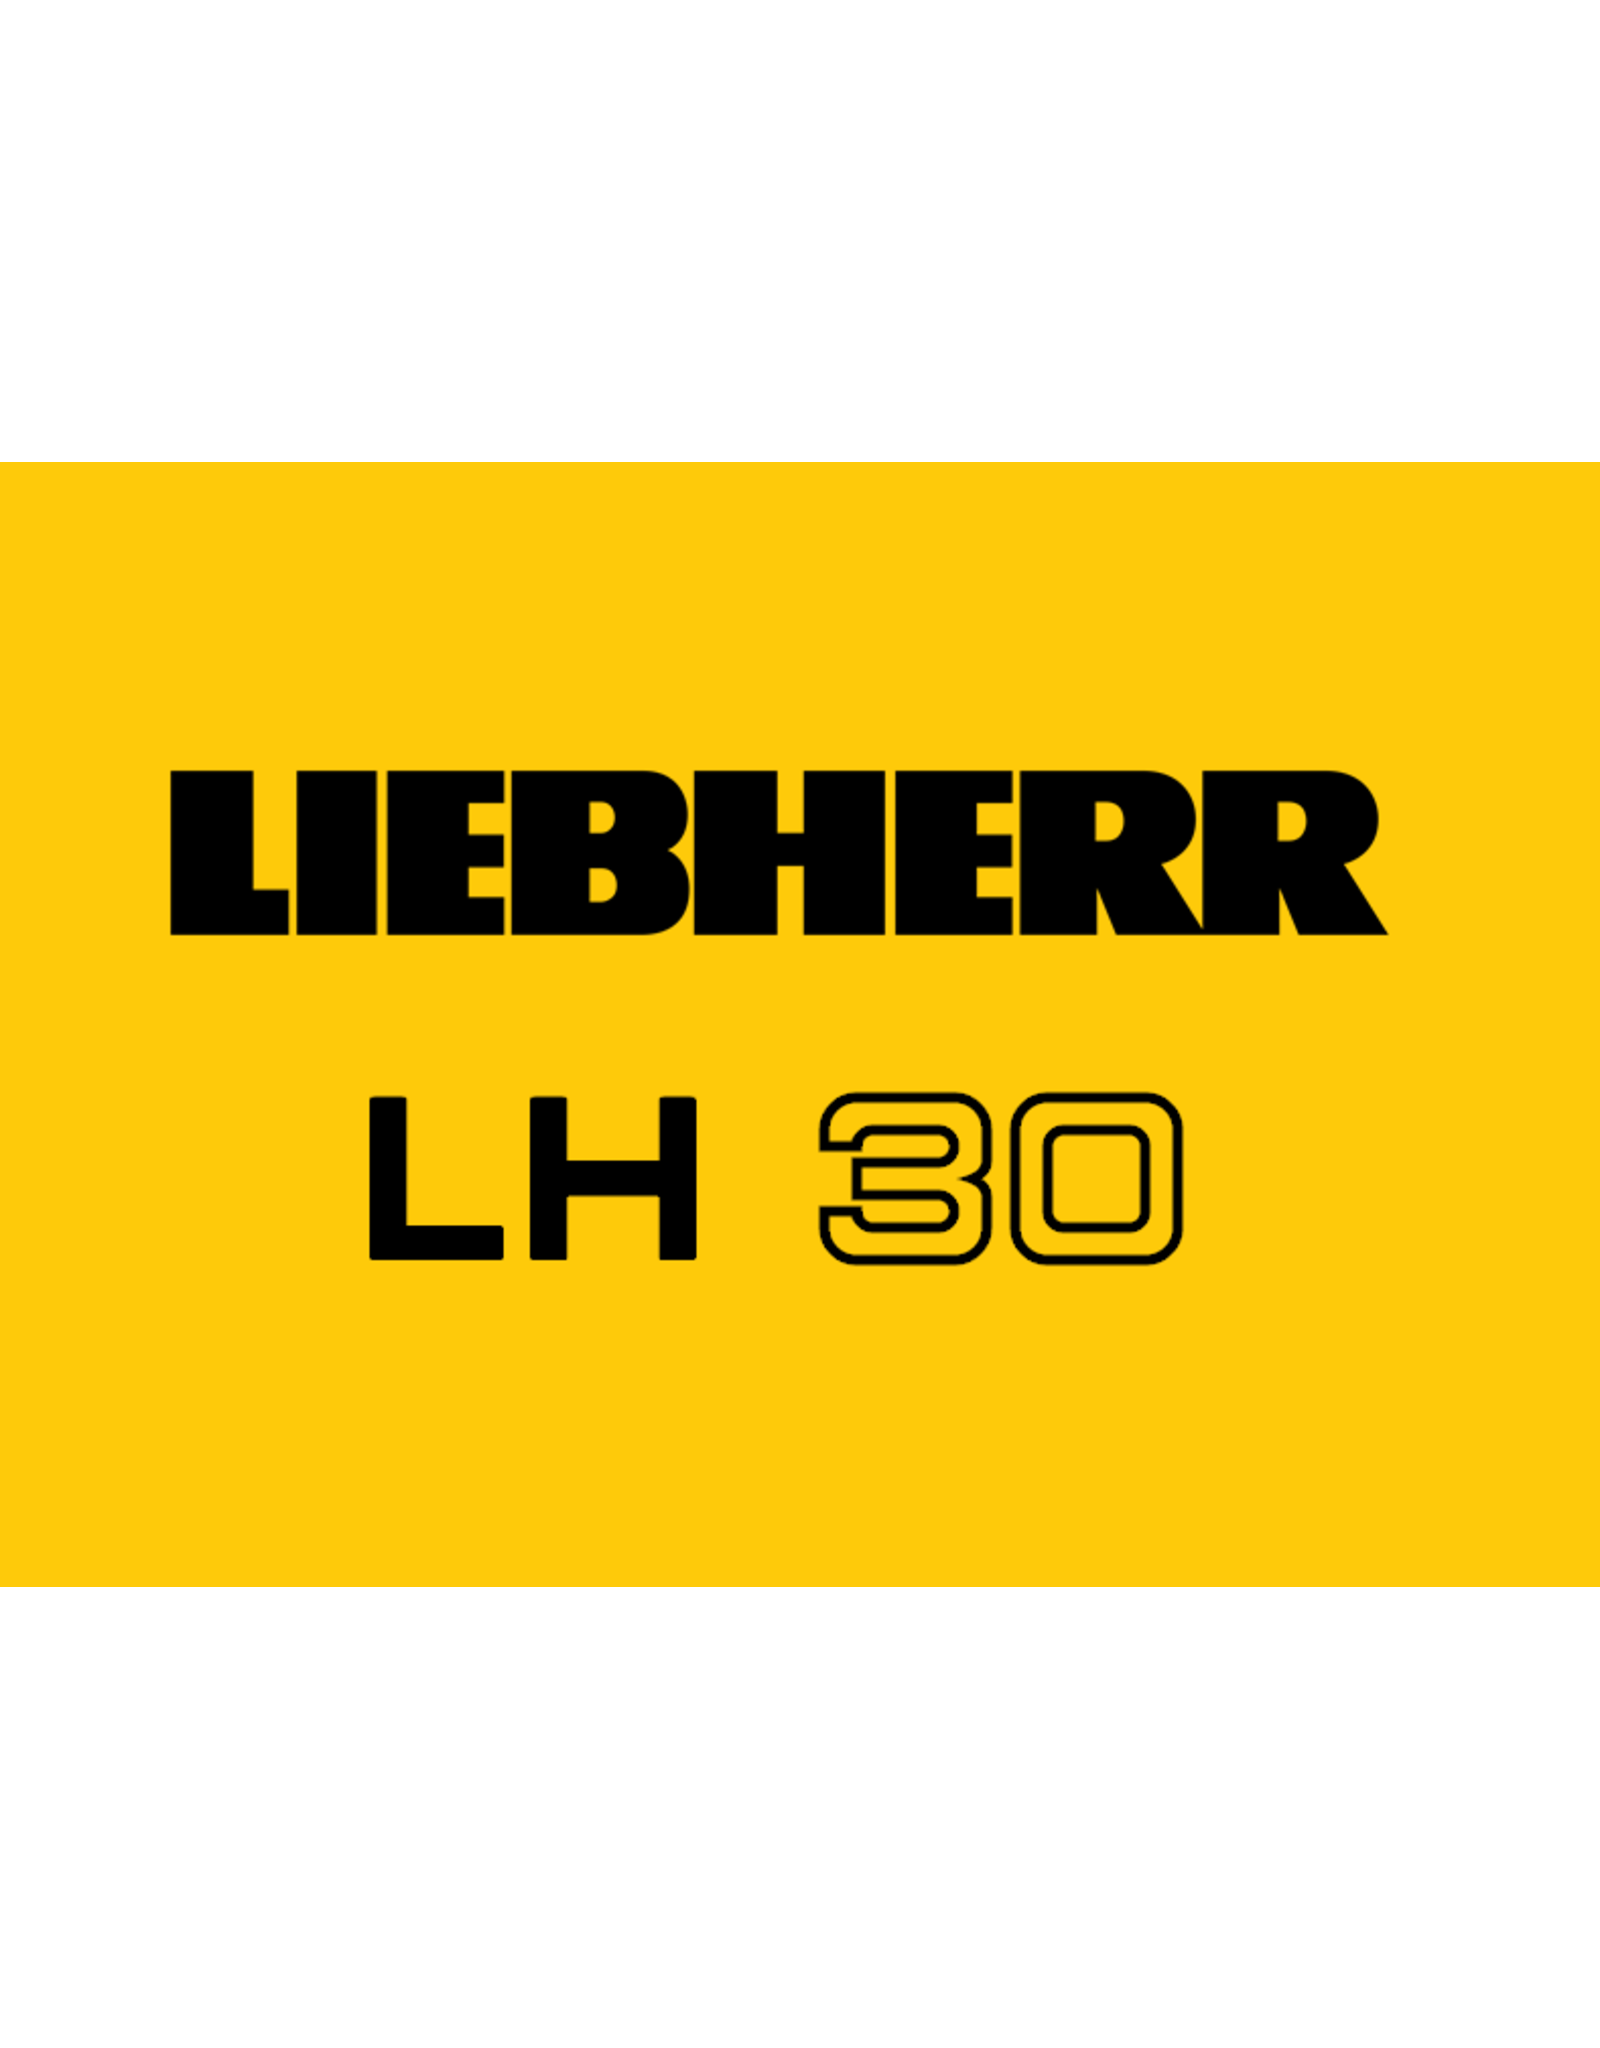 Echle Hartstahl GmbH Bucket cylinder guards for Liebherr LH30